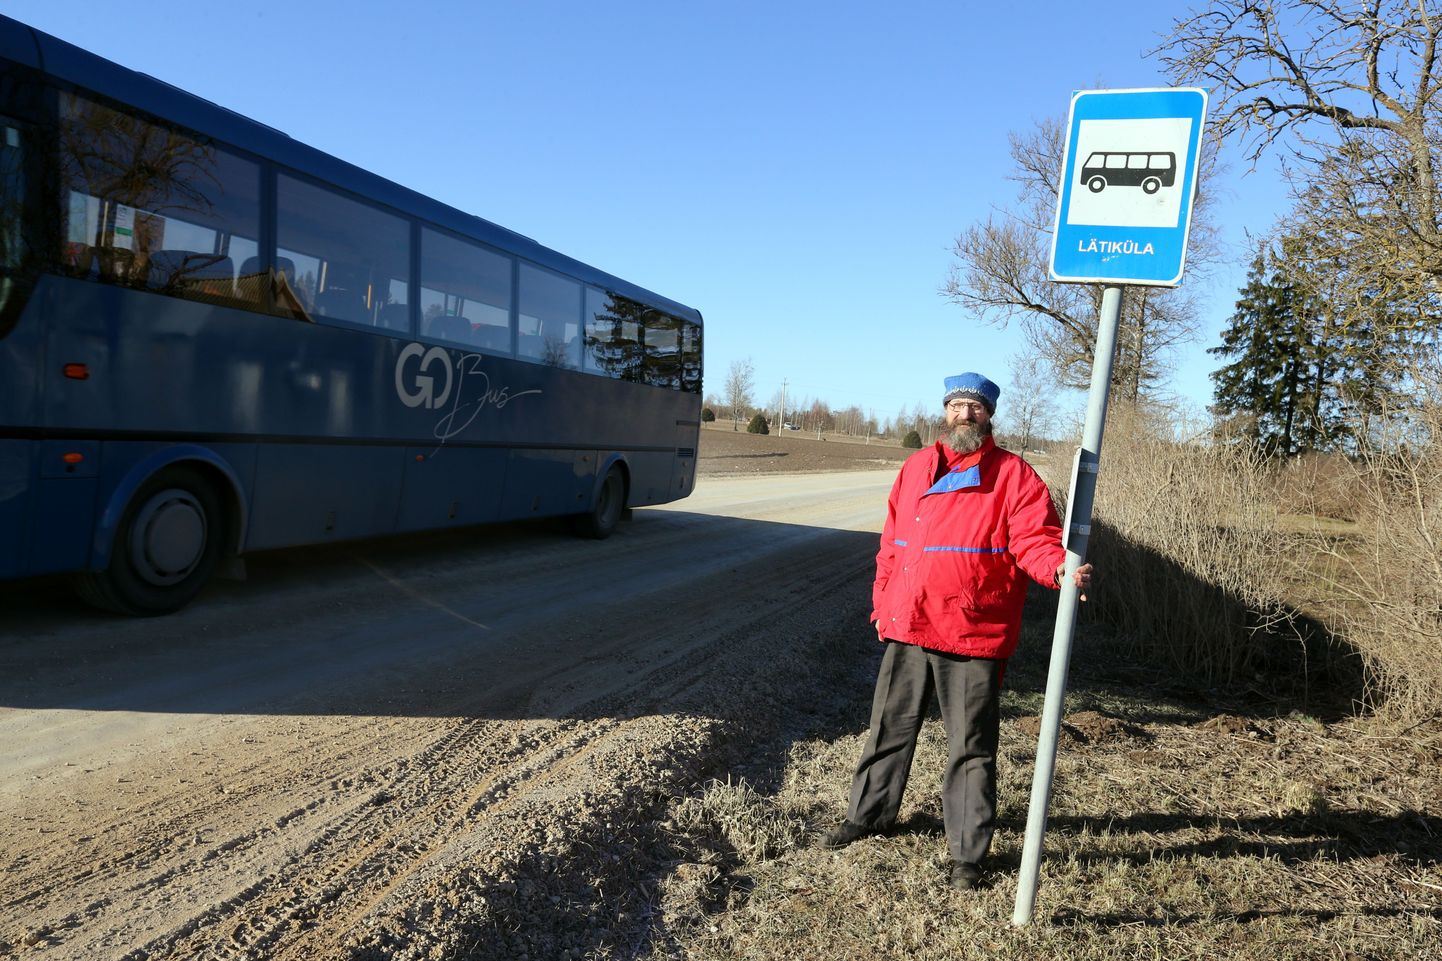 Pea kuu aega tagasi alustas Heino Soosaar Lätikülast bussisõitu, mis tõi talle sekeldused, mille lõppu pole näha.